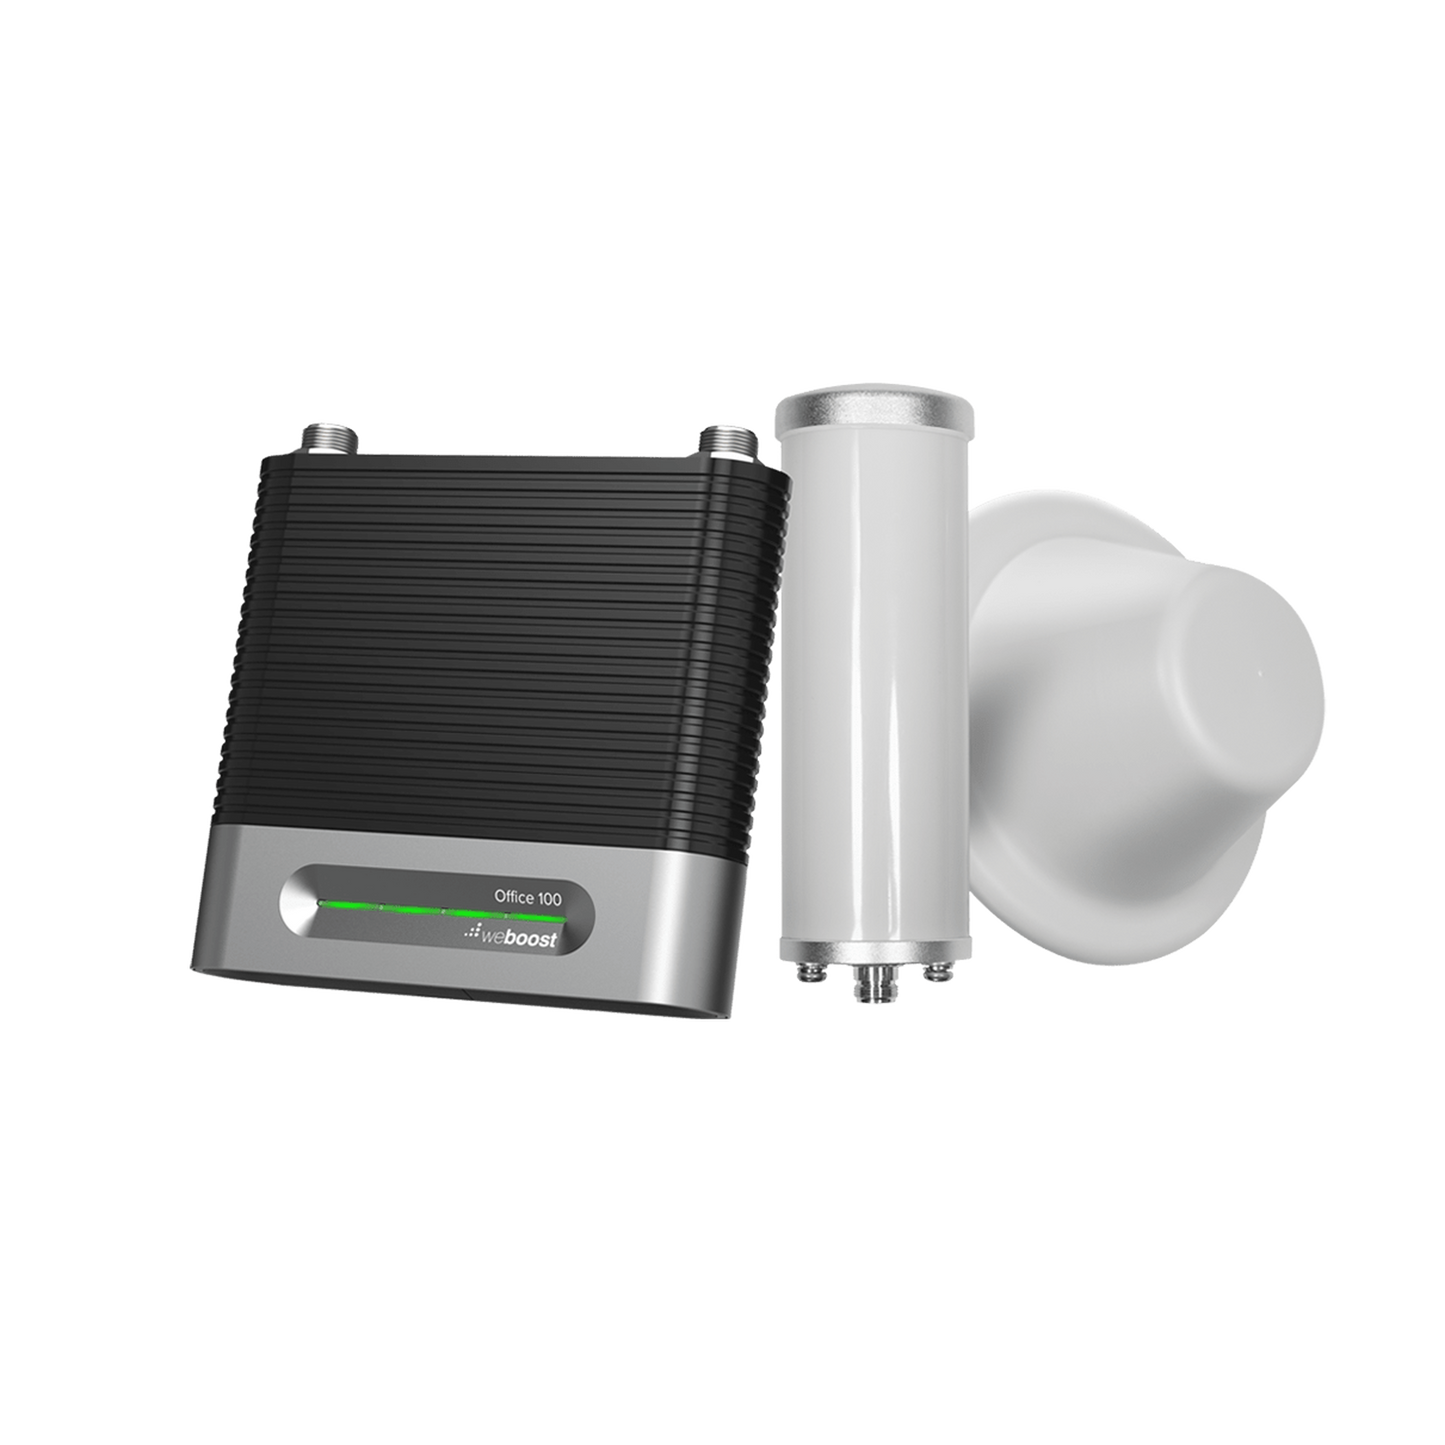 KIT Amplificador de Señal Celular 4G/ 3G, OFFICE 100 | Mejora la Señal Celular de Múltiples Operadores | Cubre áreas de hasta 3000 metros cuadrados